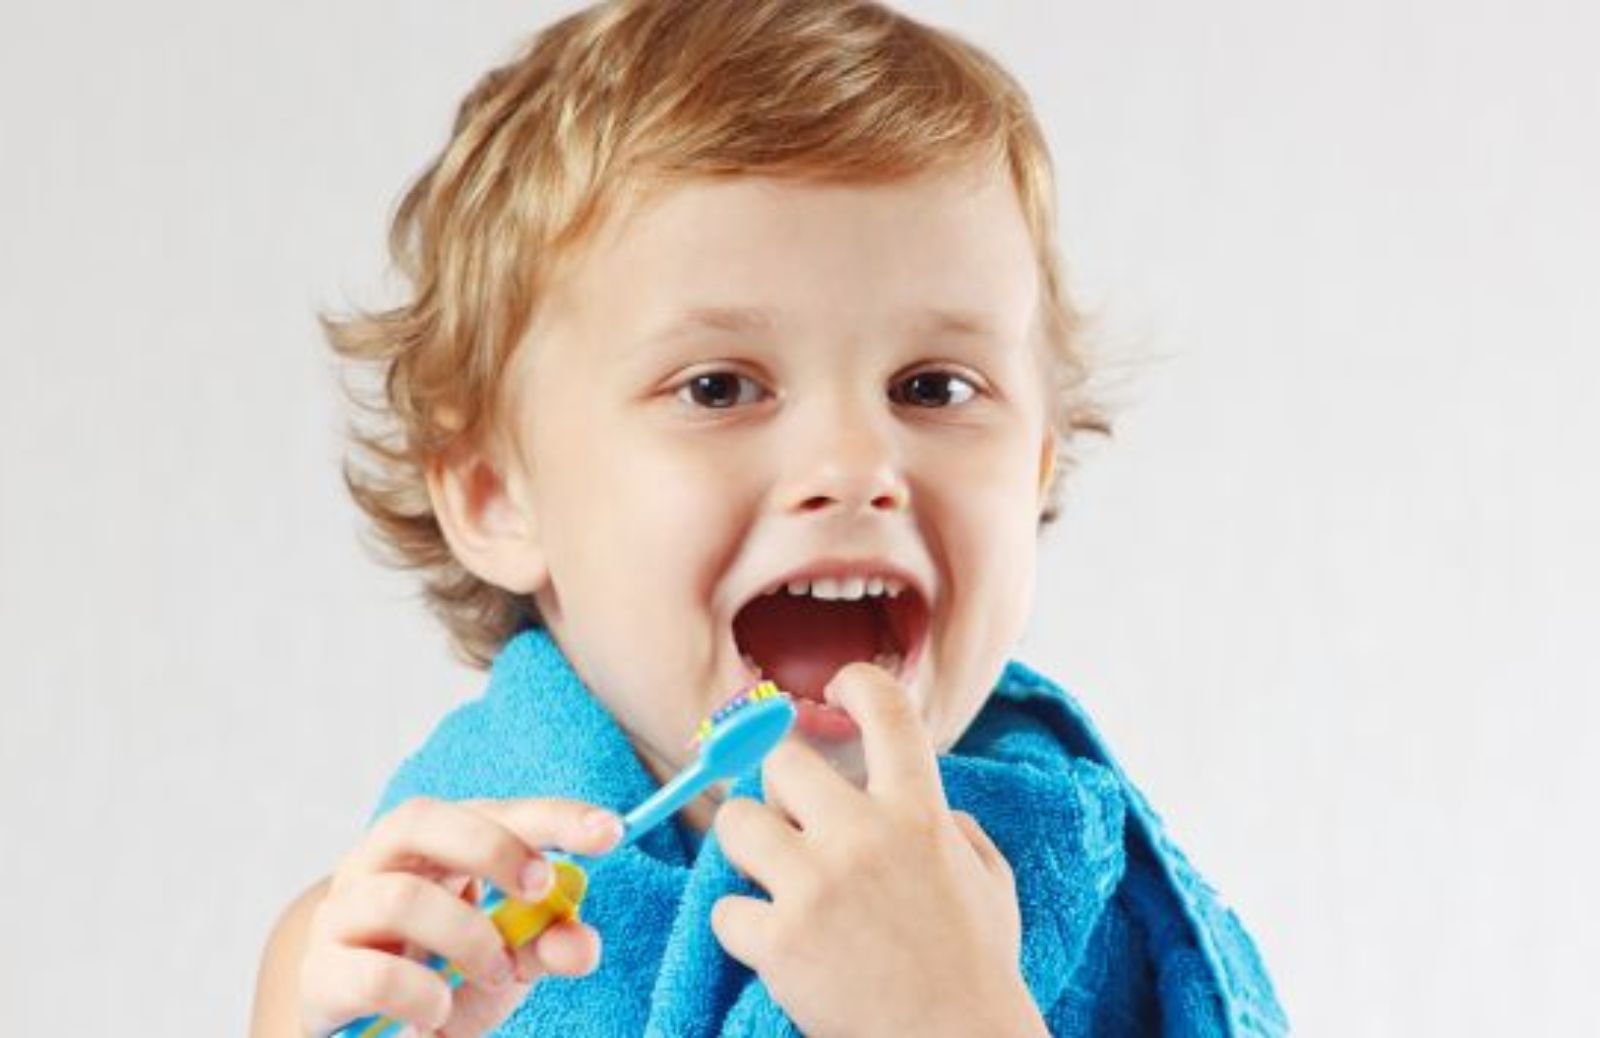 Come sconfiggere la carie dentale dei bambini: i consigli degli esperti